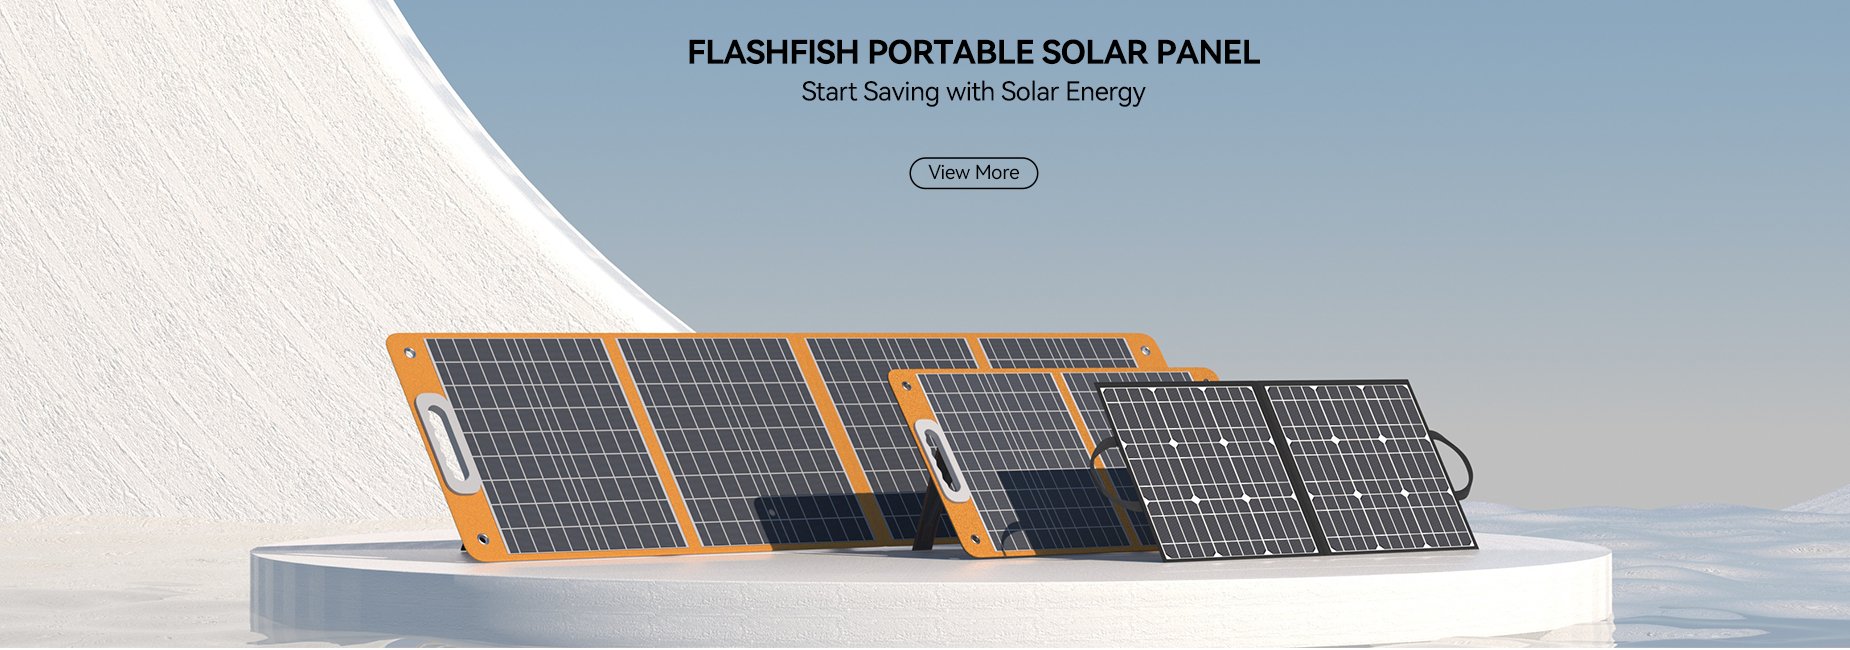 Portable Solar Panels - flashfishsolargenerator